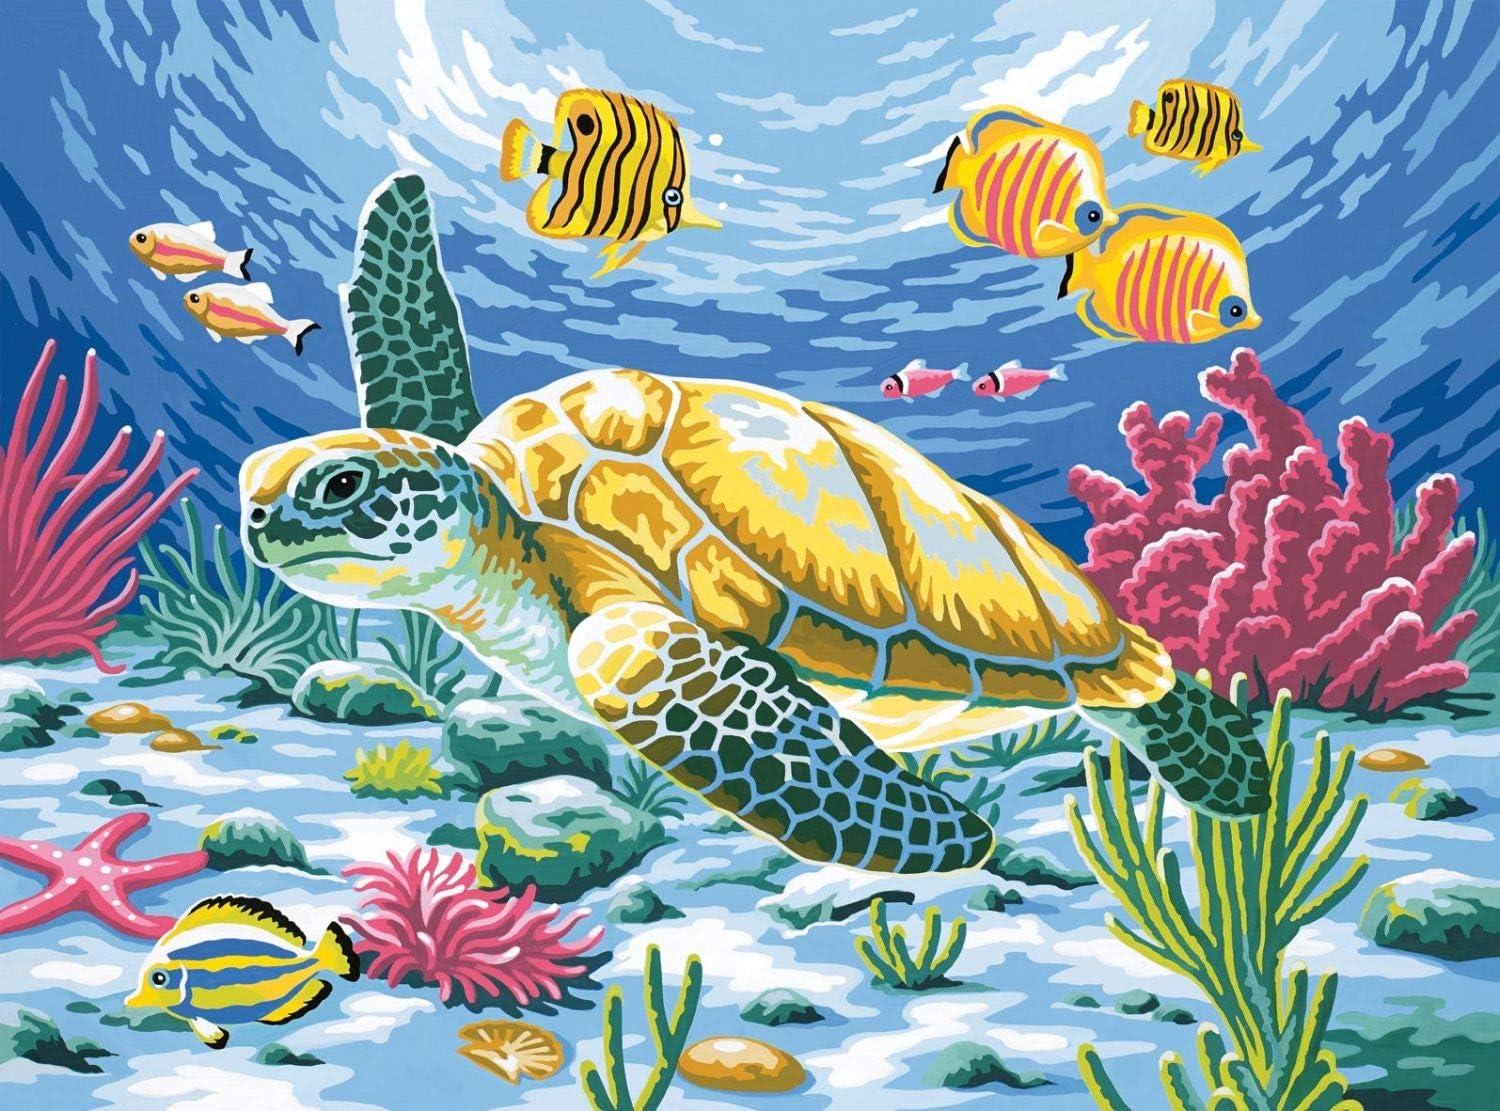 Reeves Farbe nach Zahlen große 12x16 Zoll - Meeresschildkröte